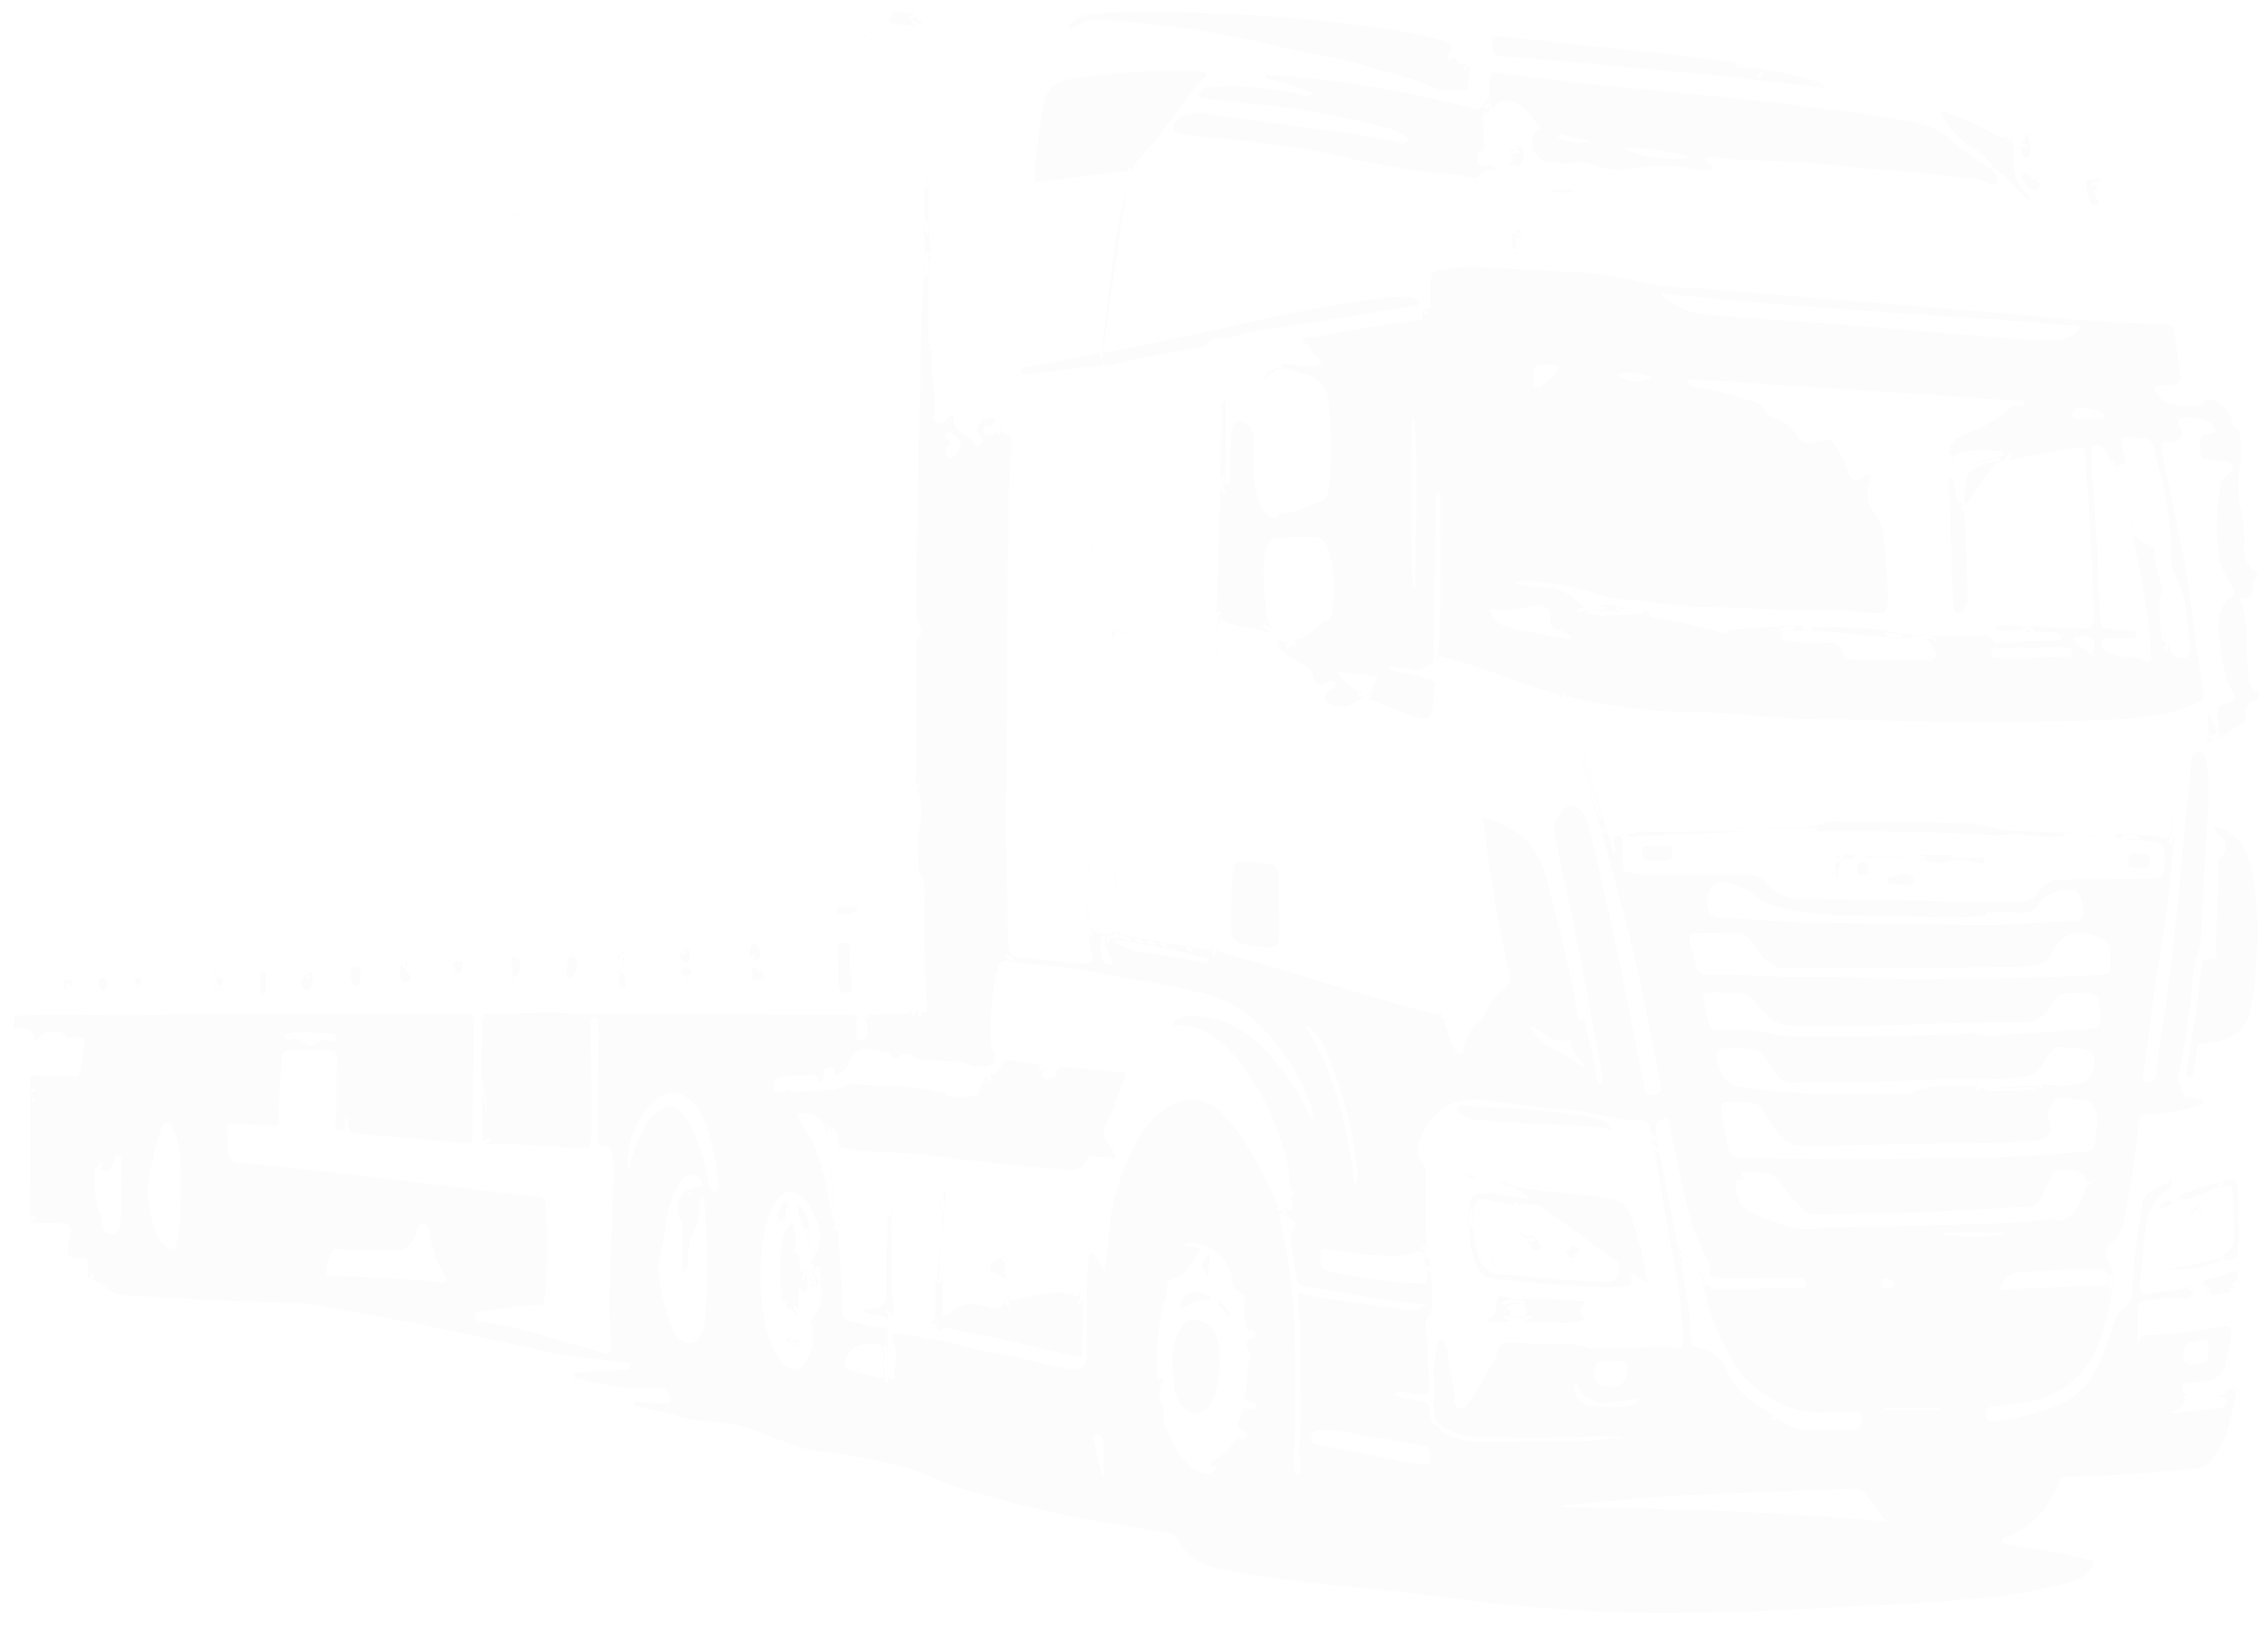 Icon eines Lastwagens